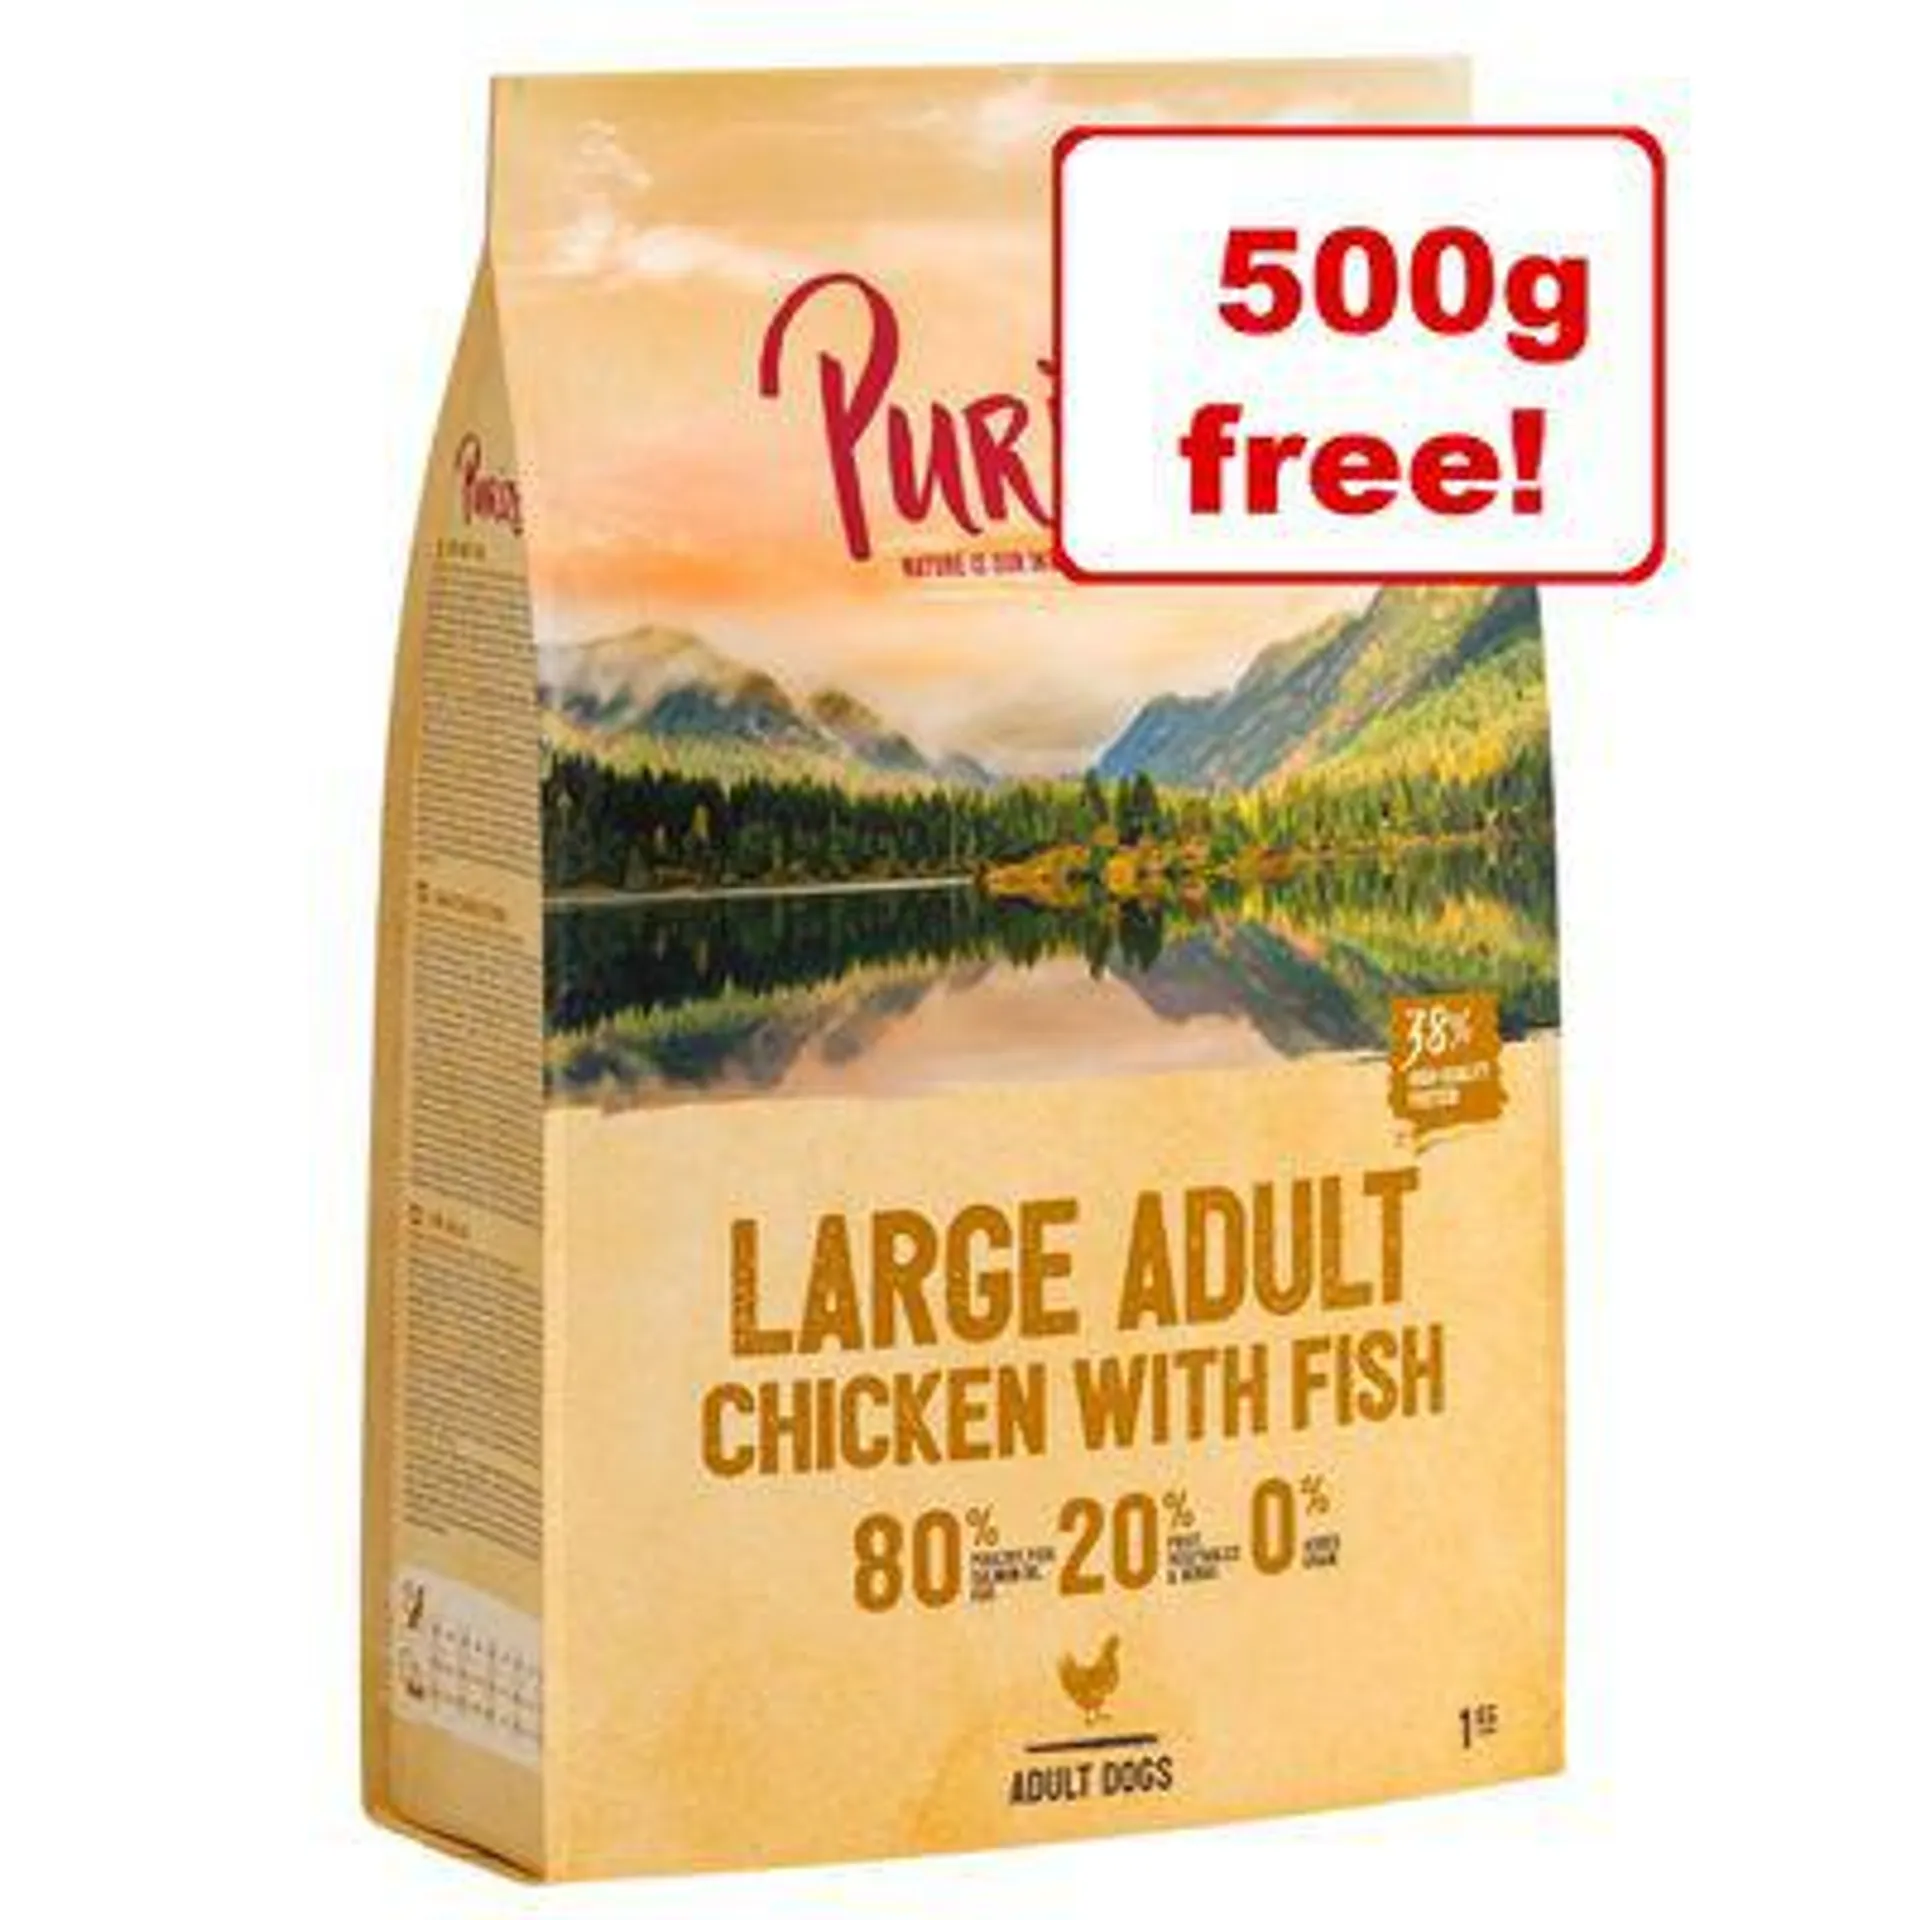 3 x 1kg Purizon Dry Dog Food - 2.5kg + 500g Free!*